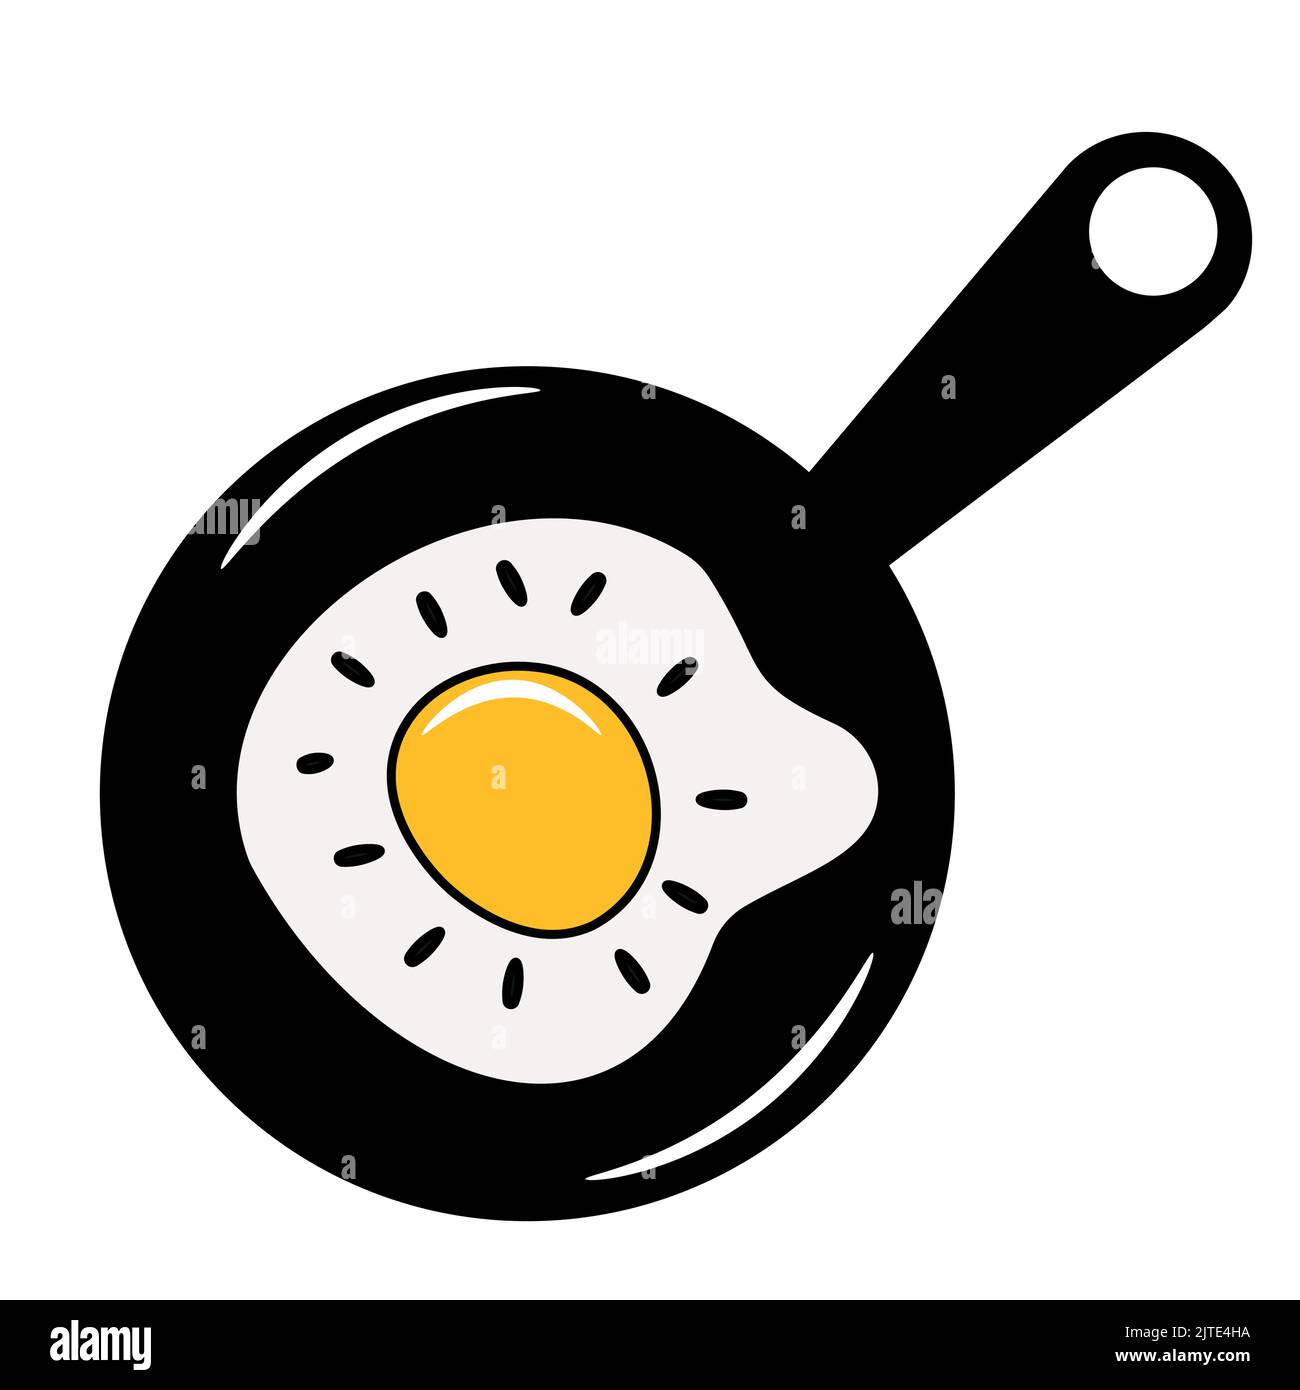 Fried egg breakfast  vector graphic design in frying pan. Stock Vector